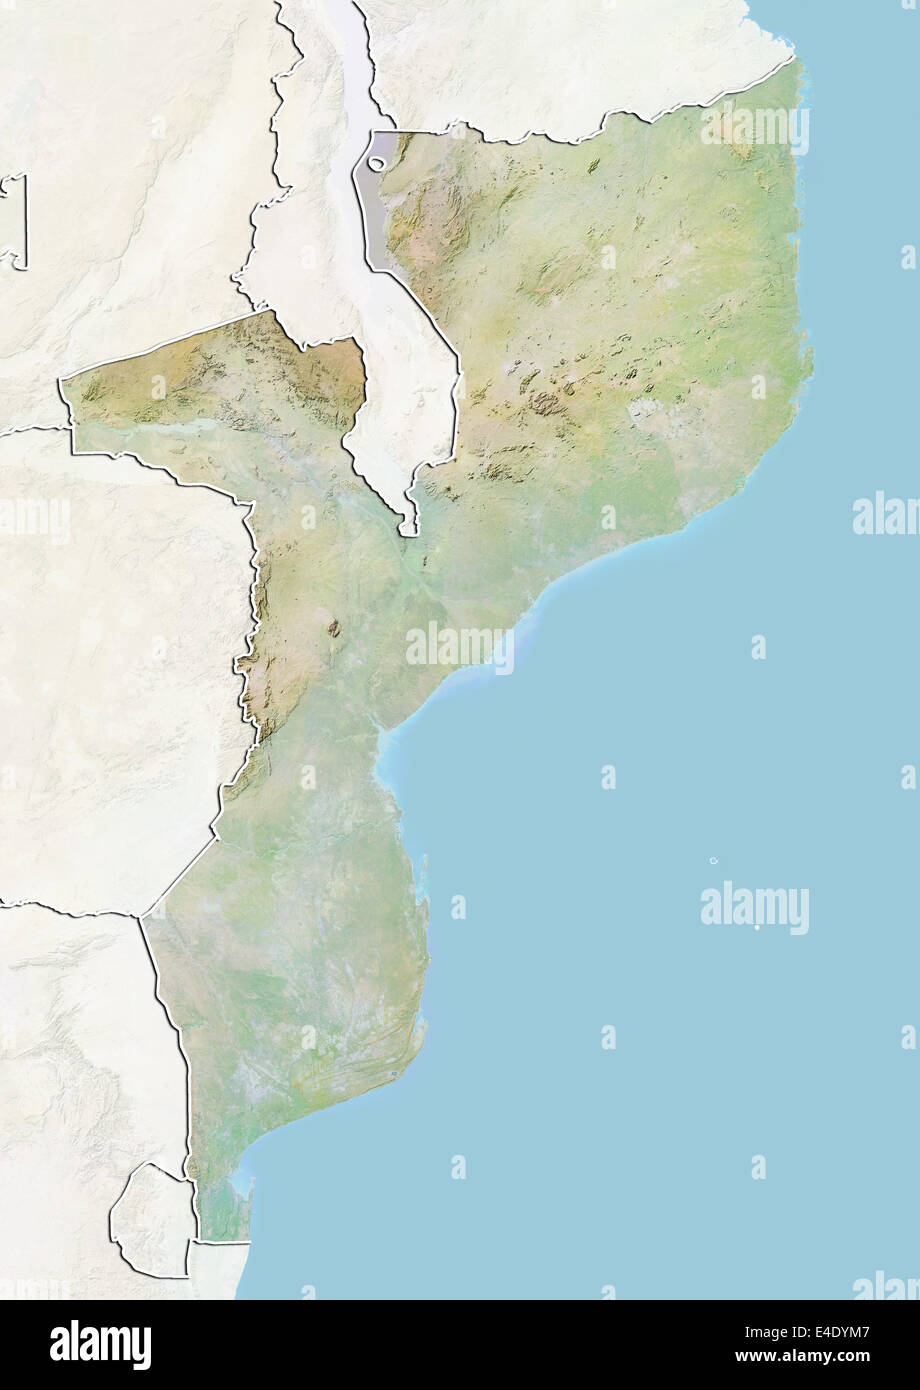 Le Mozambique, carte en relief avec bordure et masque Banque D'Images